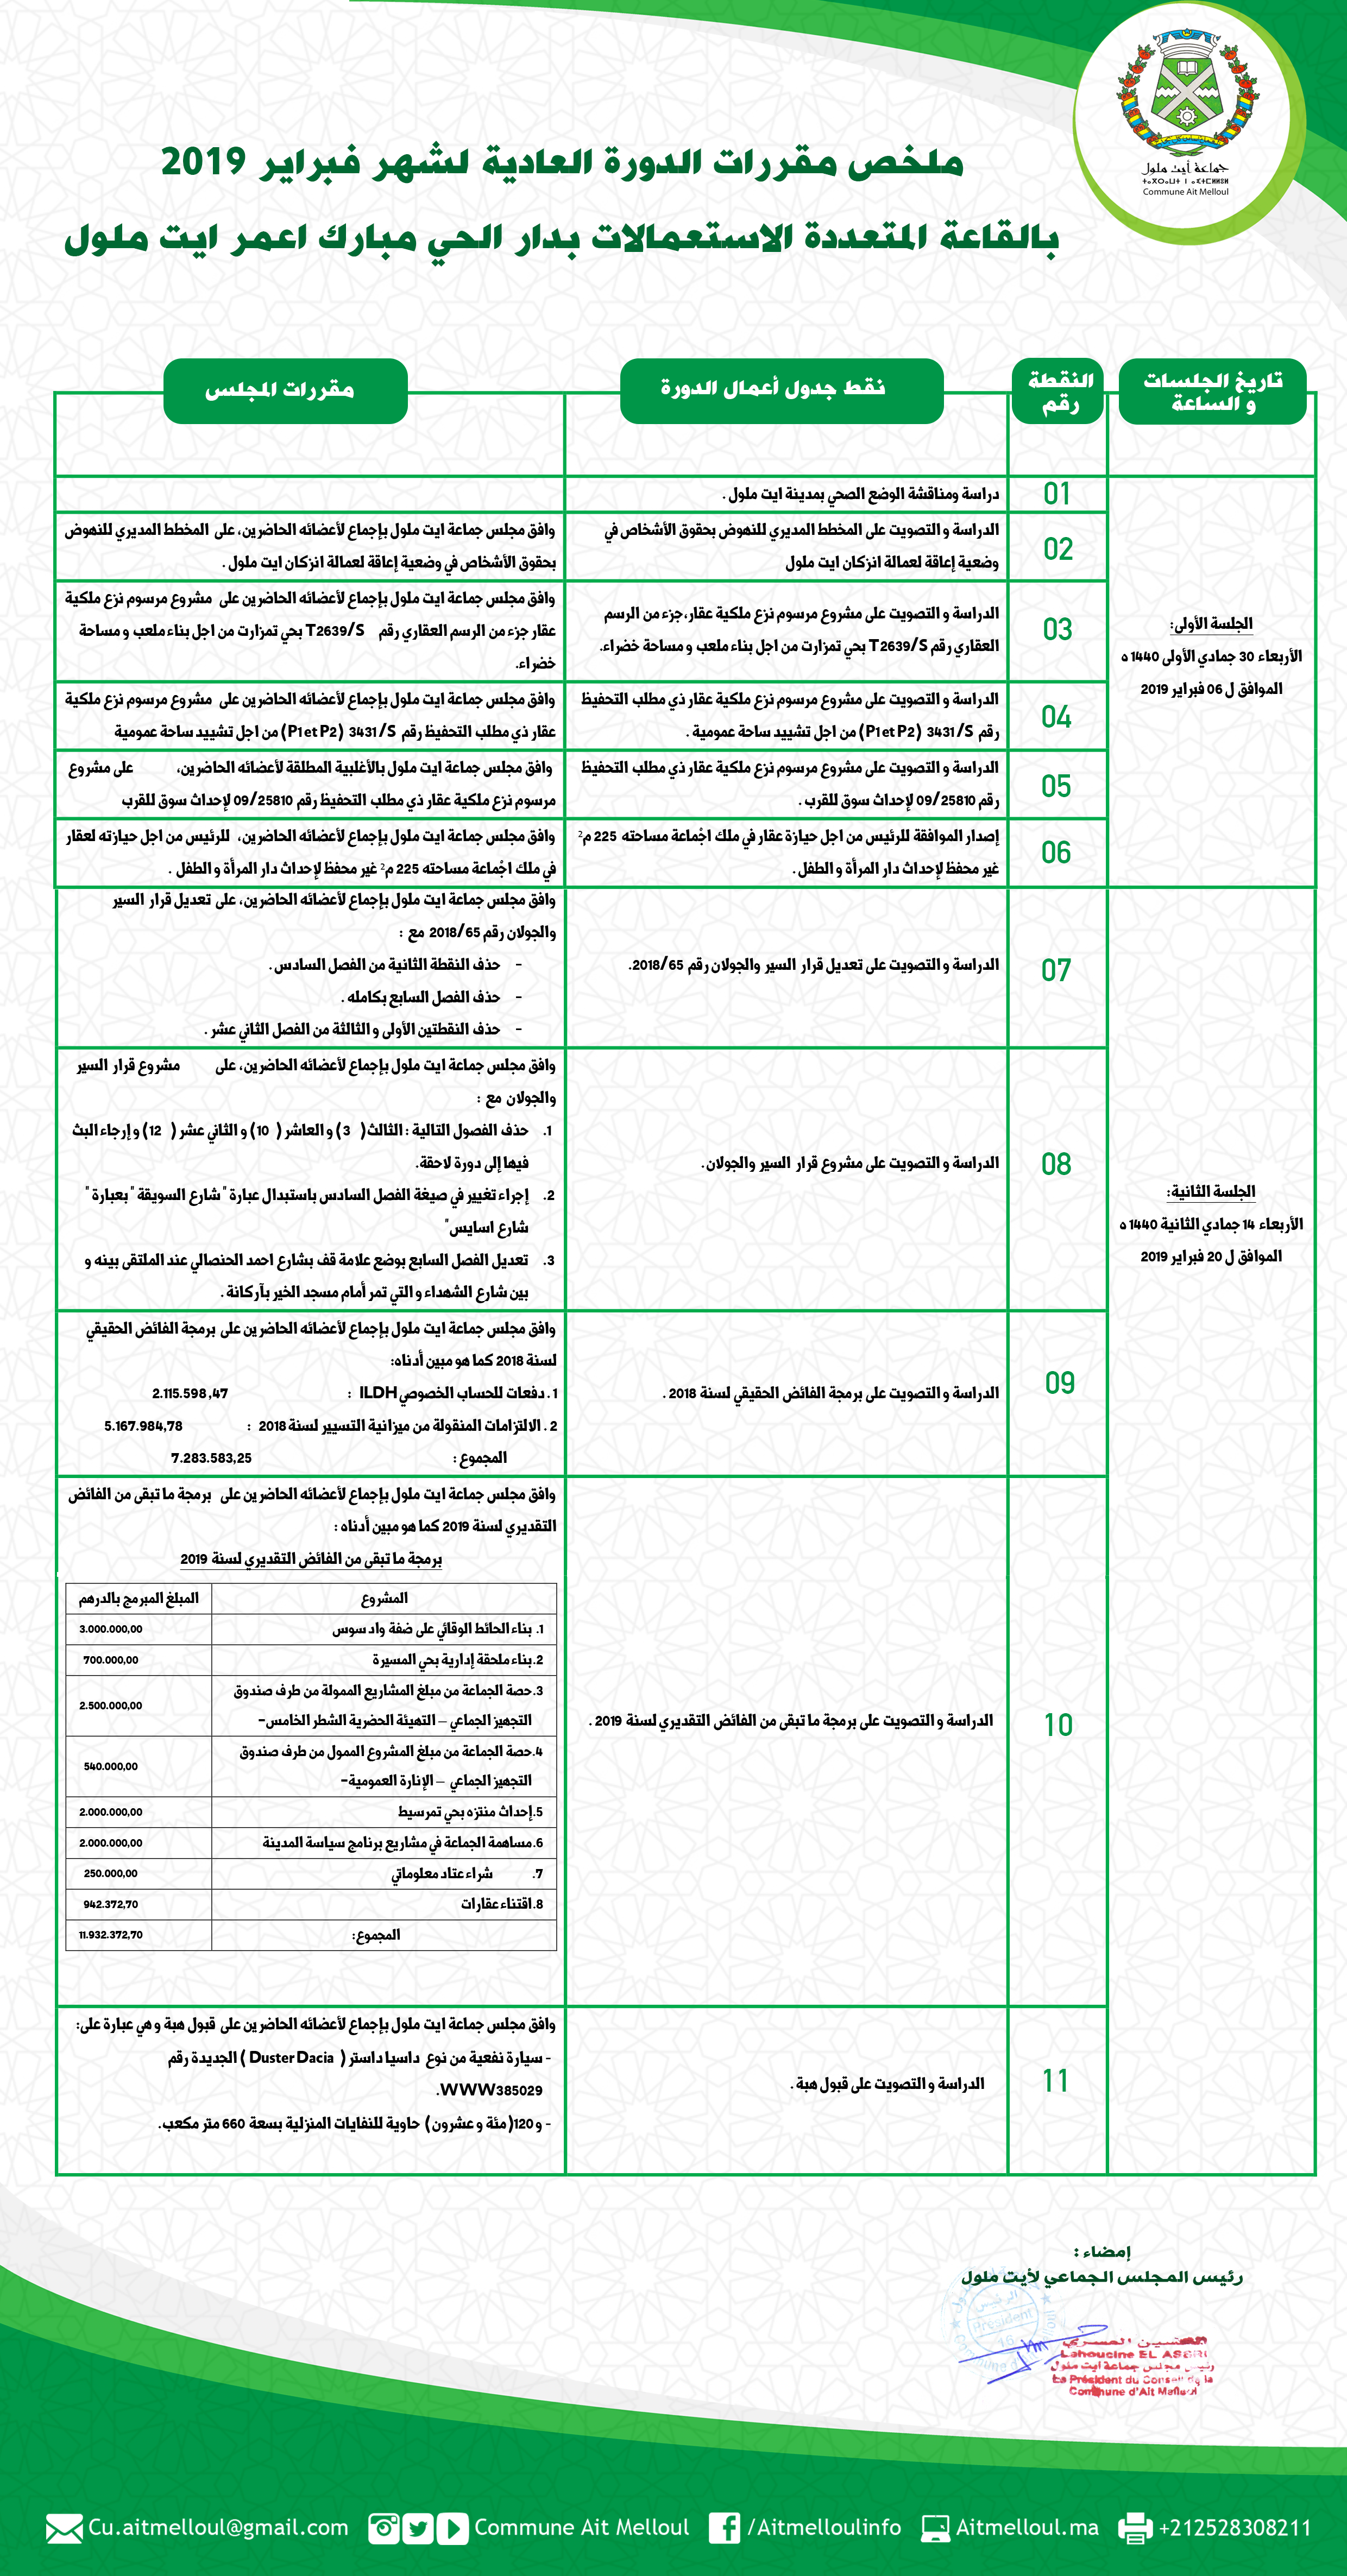 ملخص مقررات المجلس الجماعي لأيت ملول - الدورة العادية لشهر فبراير 2019